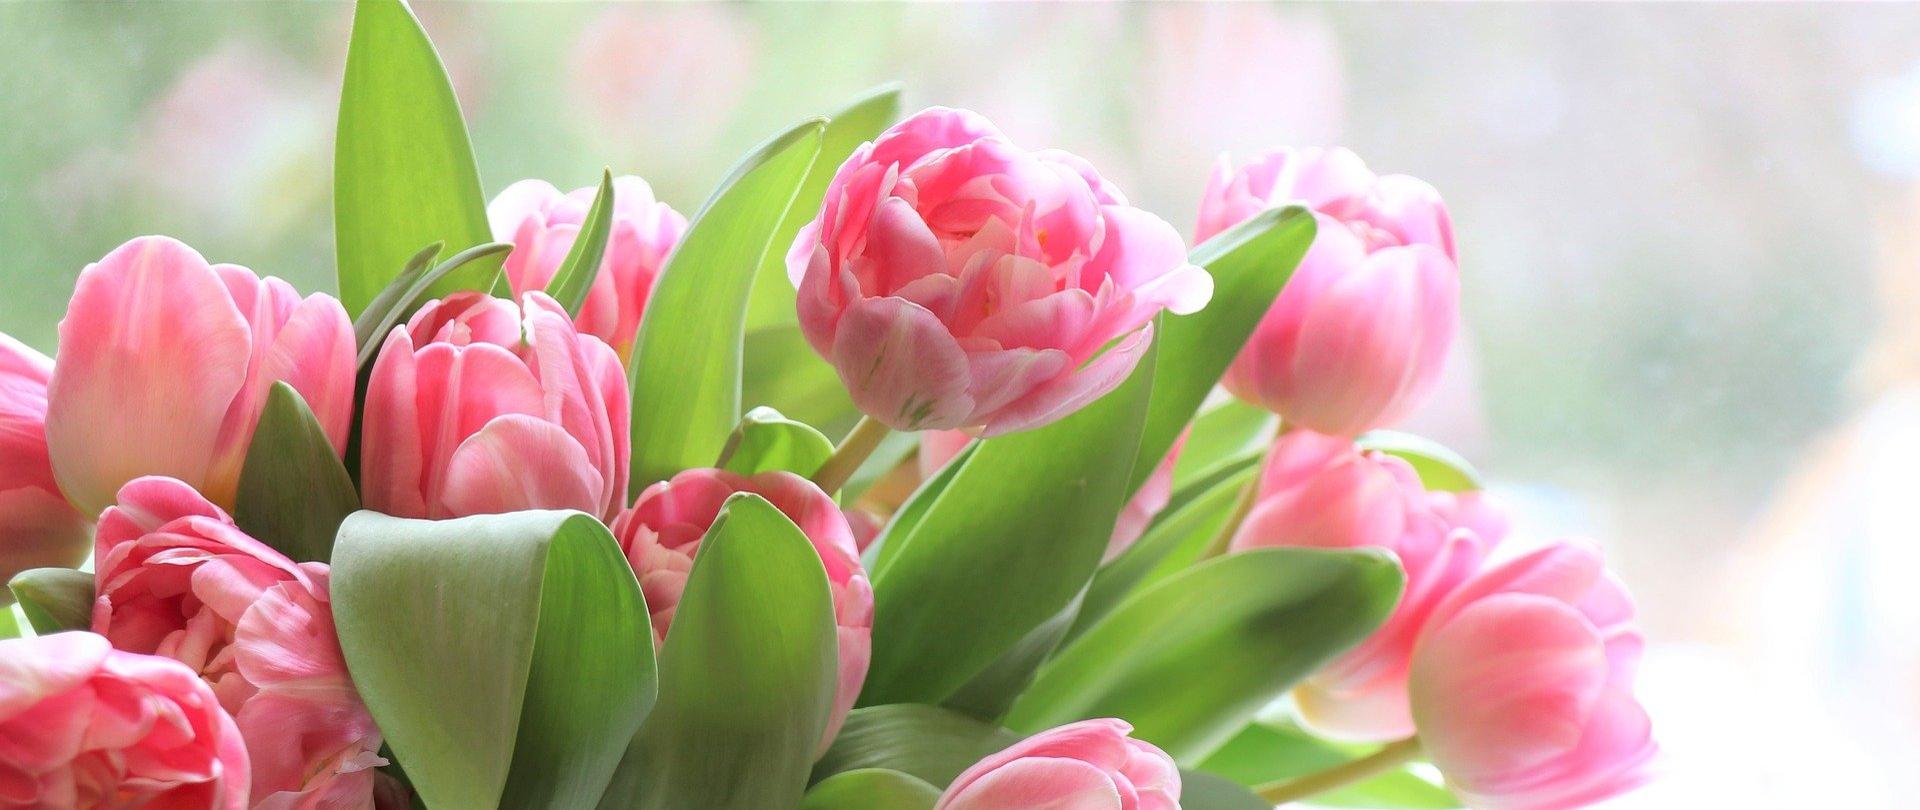 Tulipany. Na zdjęciu widoczny jest bukiet różowych tulipanów.